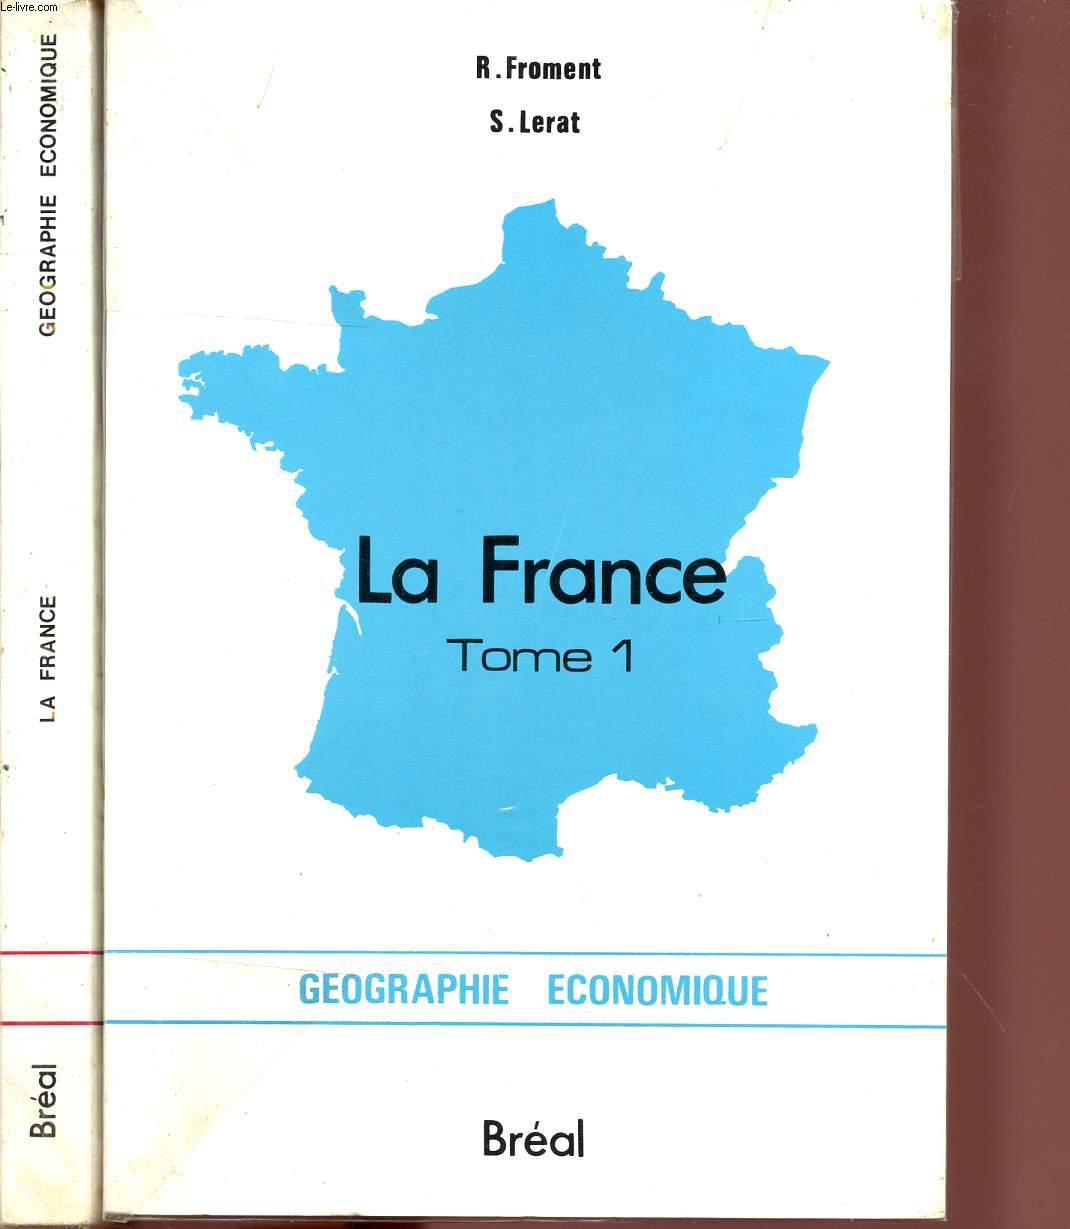 LA FRANCE / TOMES 1 ET 2 / GEOGRAPHIE ECONOMIQUE.